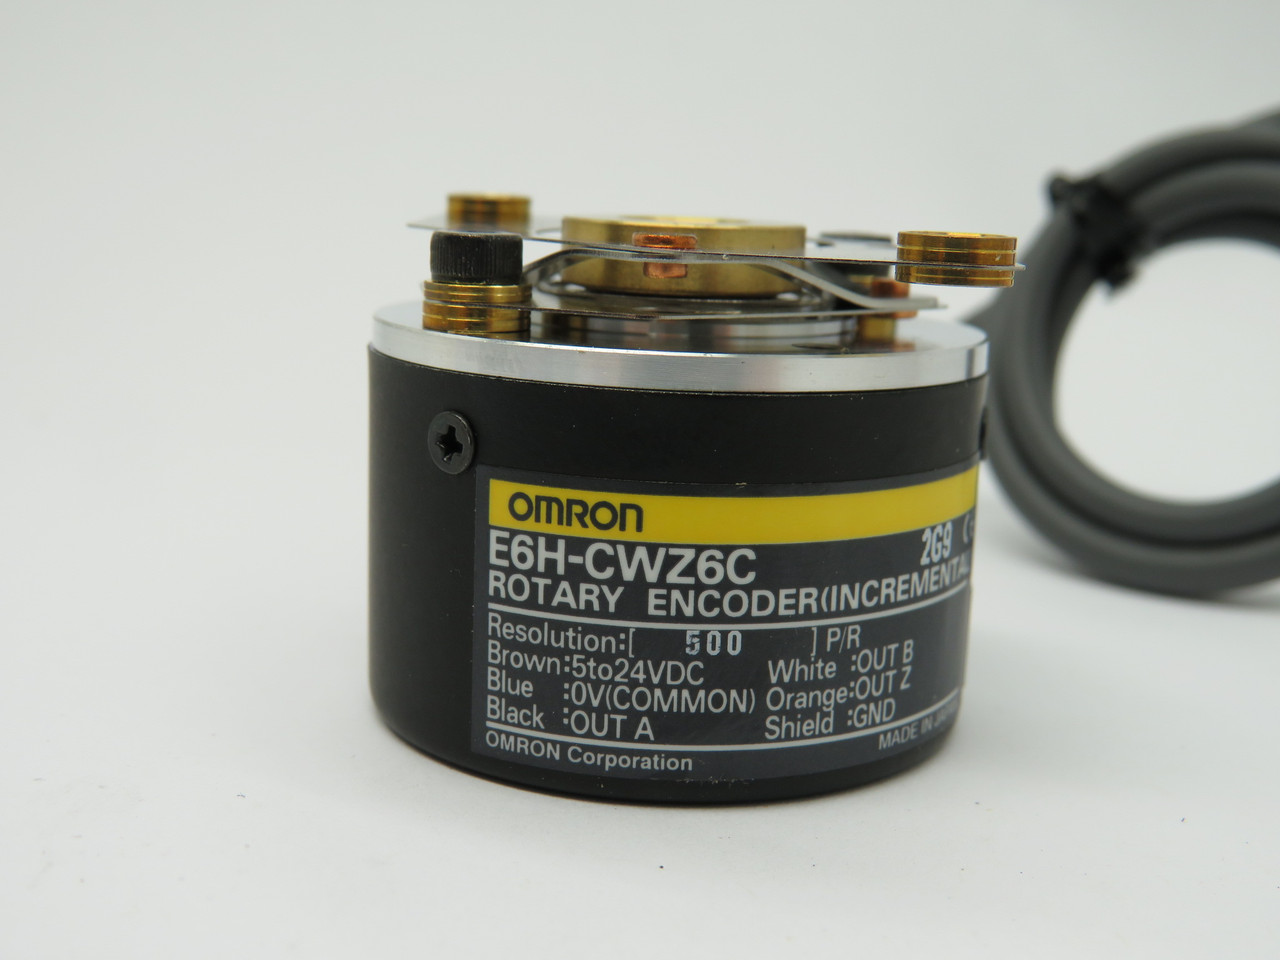 Omron E6H-CWZ6C Rotary Encoder 5-24VDC 0.5m 500P/R NEW